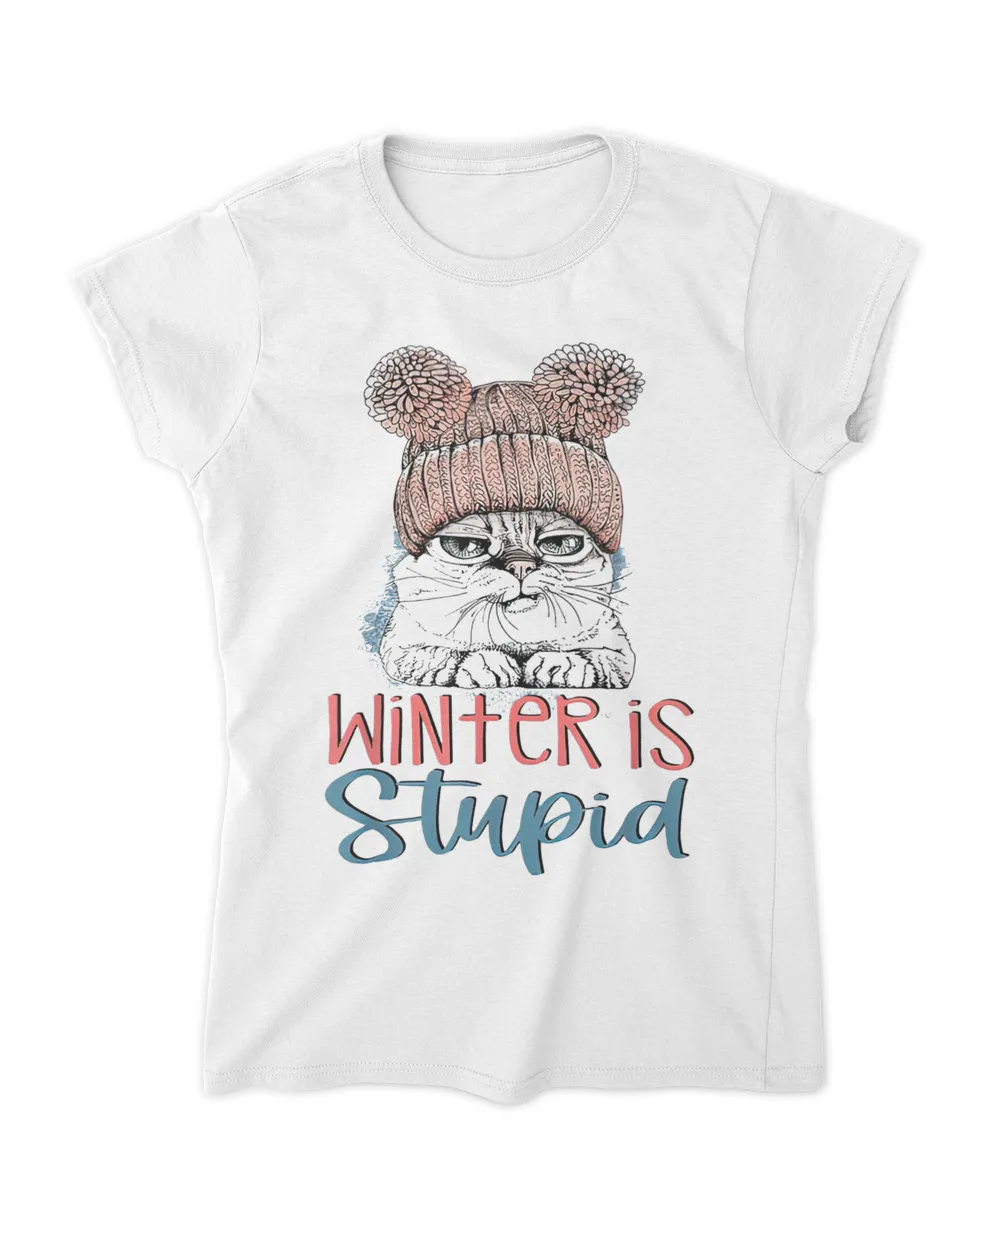 Winter is stupid - Cute grumpy cat wearing beanie QTCAT051222A28